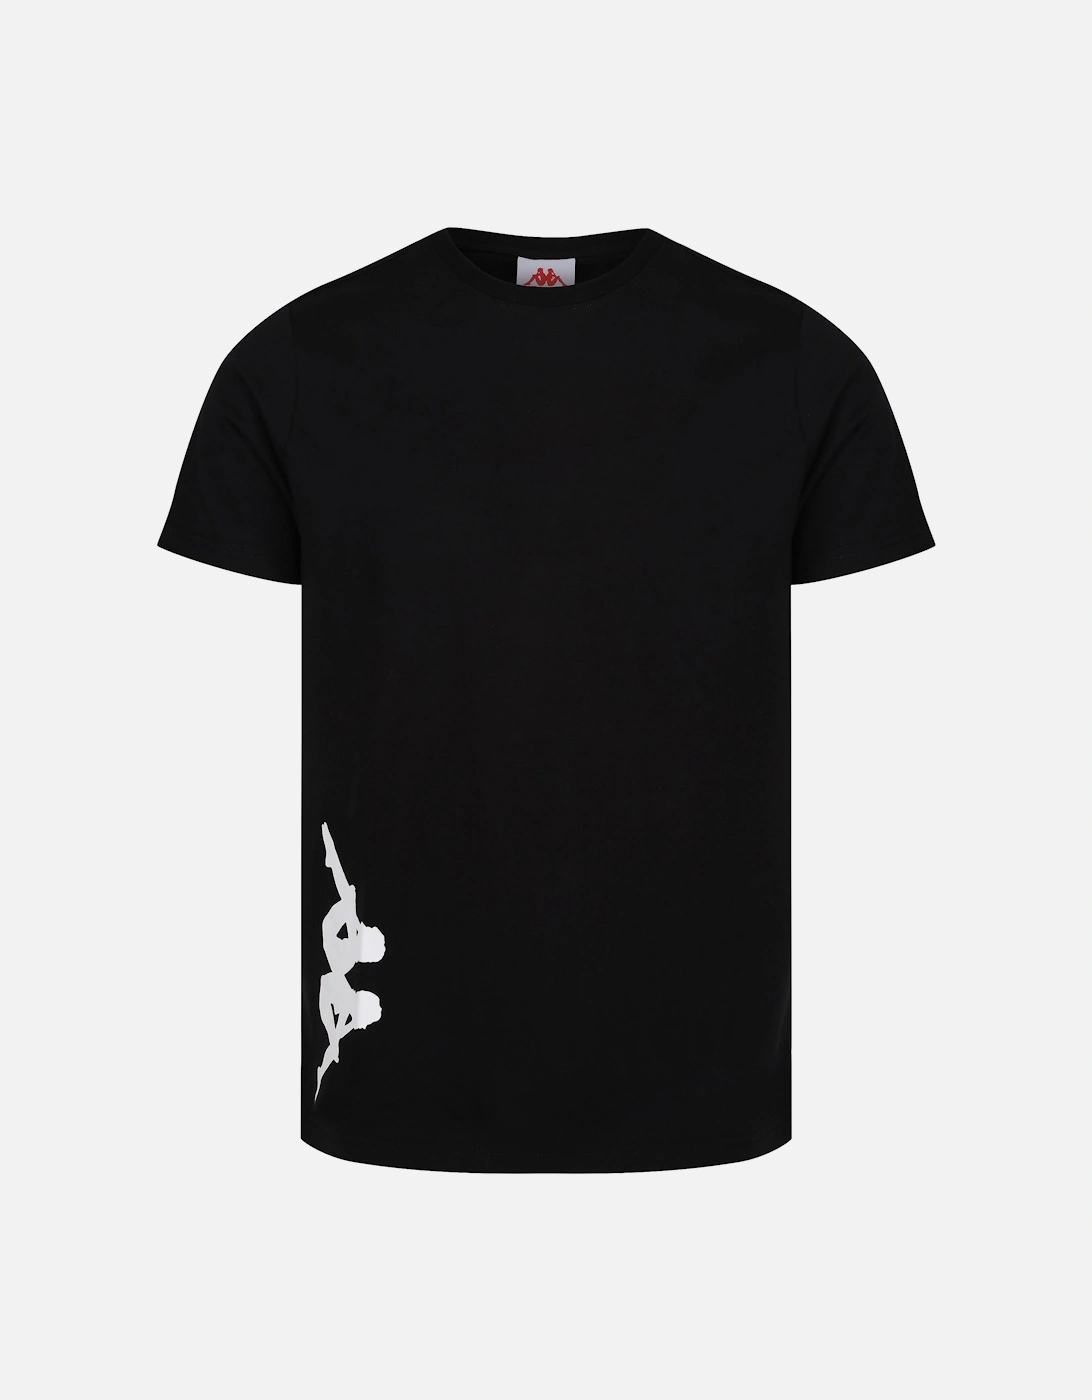 Authentic Fabis Slim Fit Crew Neck T-Shirt | Black/Unico, 4 of 3